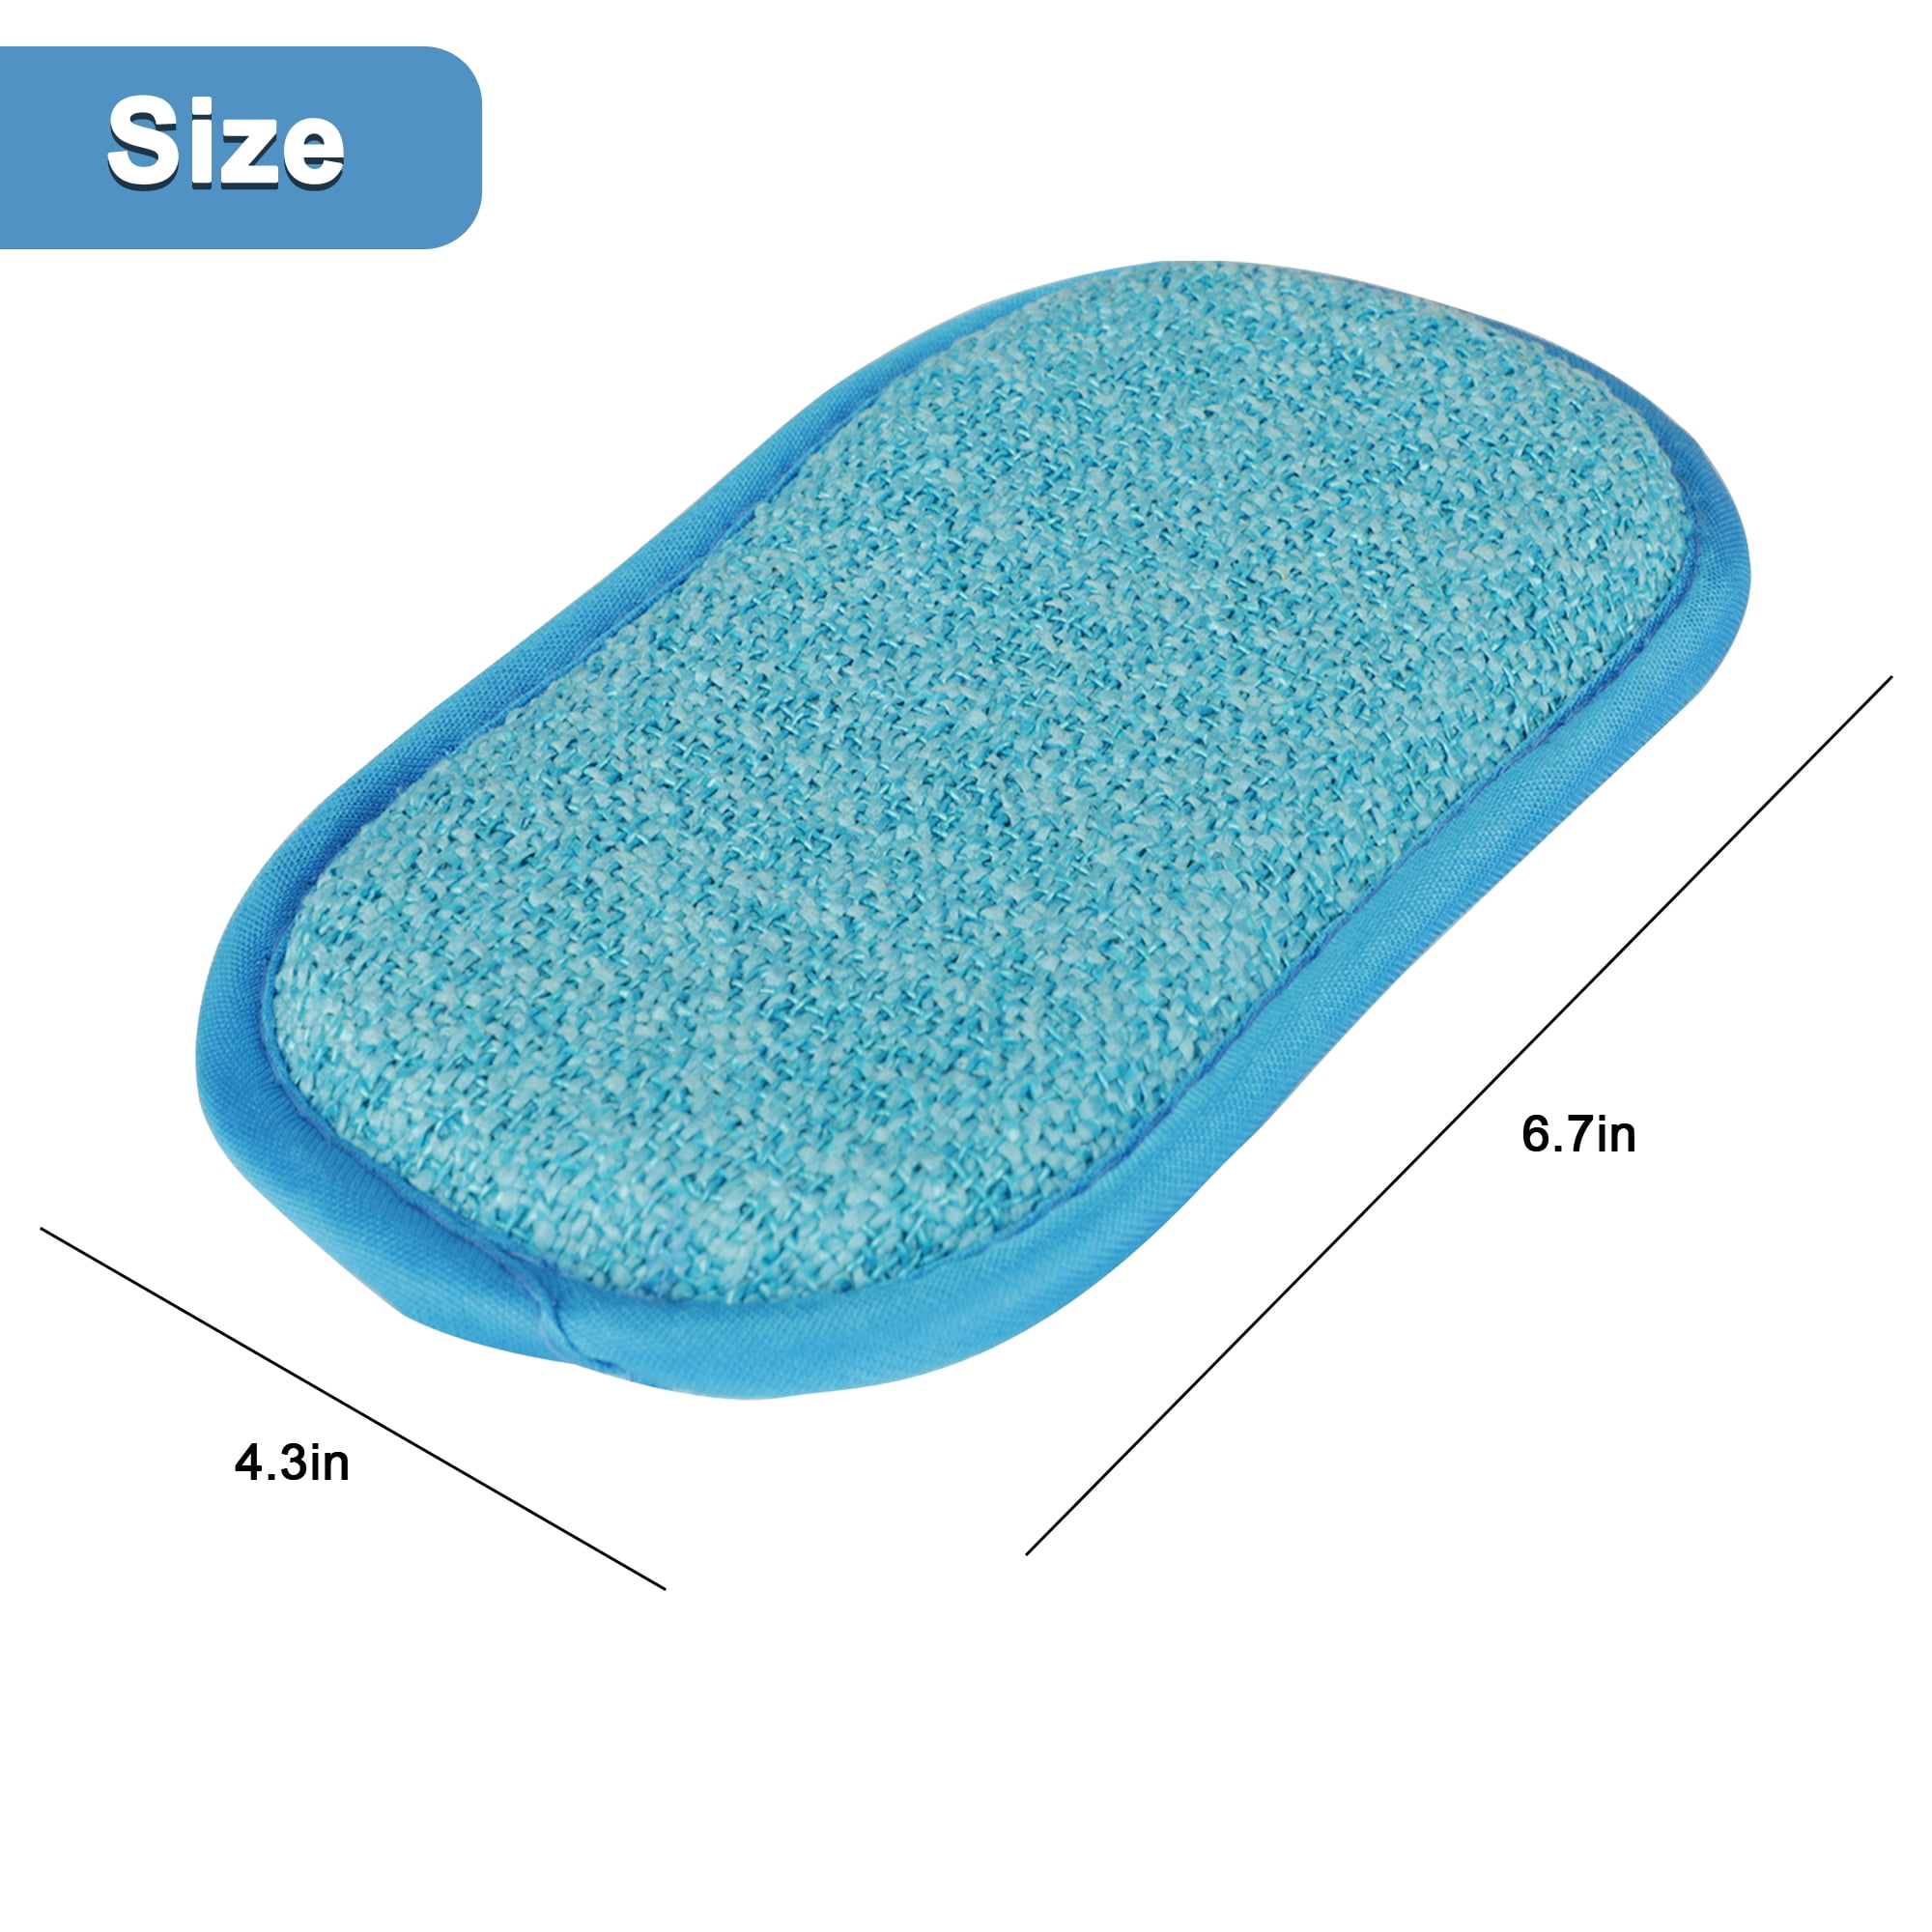 SPONGE/ Aquazone WD Double Cell Foam Sponge, each